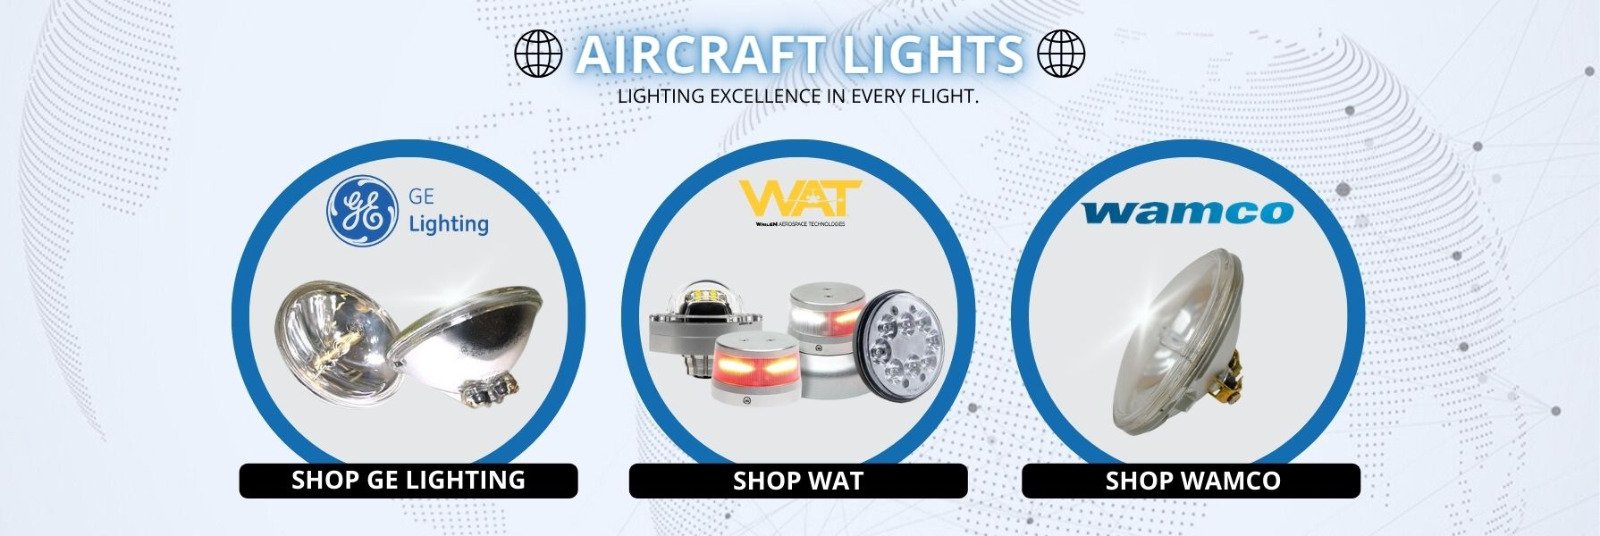 Banner aircraft lights